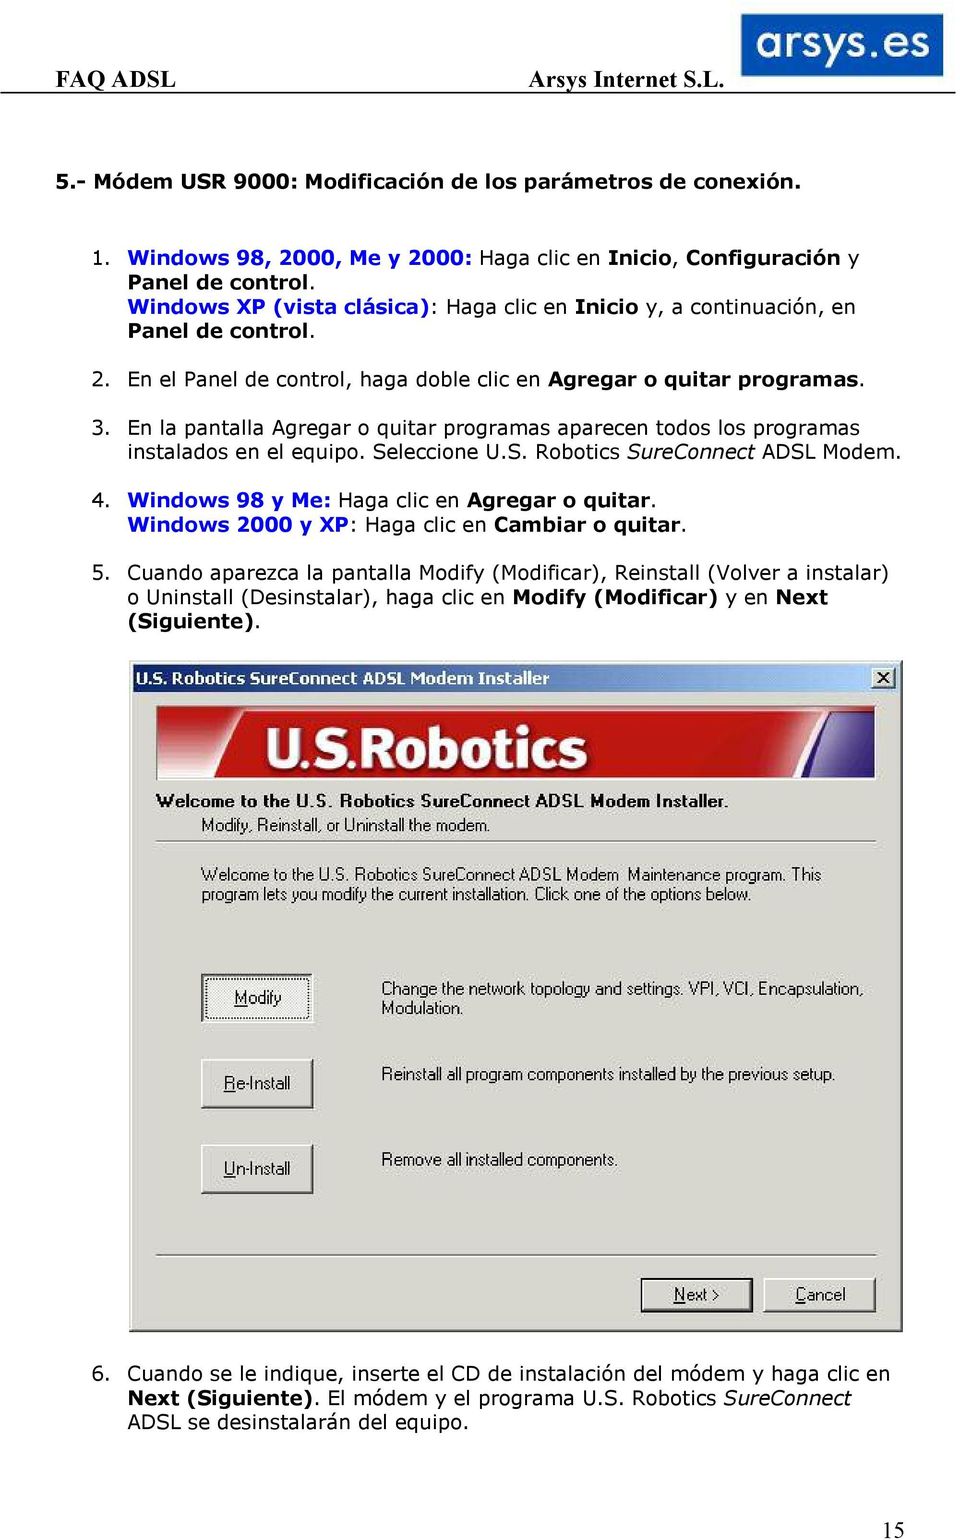 En la pantalla Agregar o quitar programas aparecen todos los programas instalados en el equipo. Seleccione U.S. Robotics SureConnect ADSL Modem. 4. Windows 98 y Me: Haga clic en Agregar o quitar.